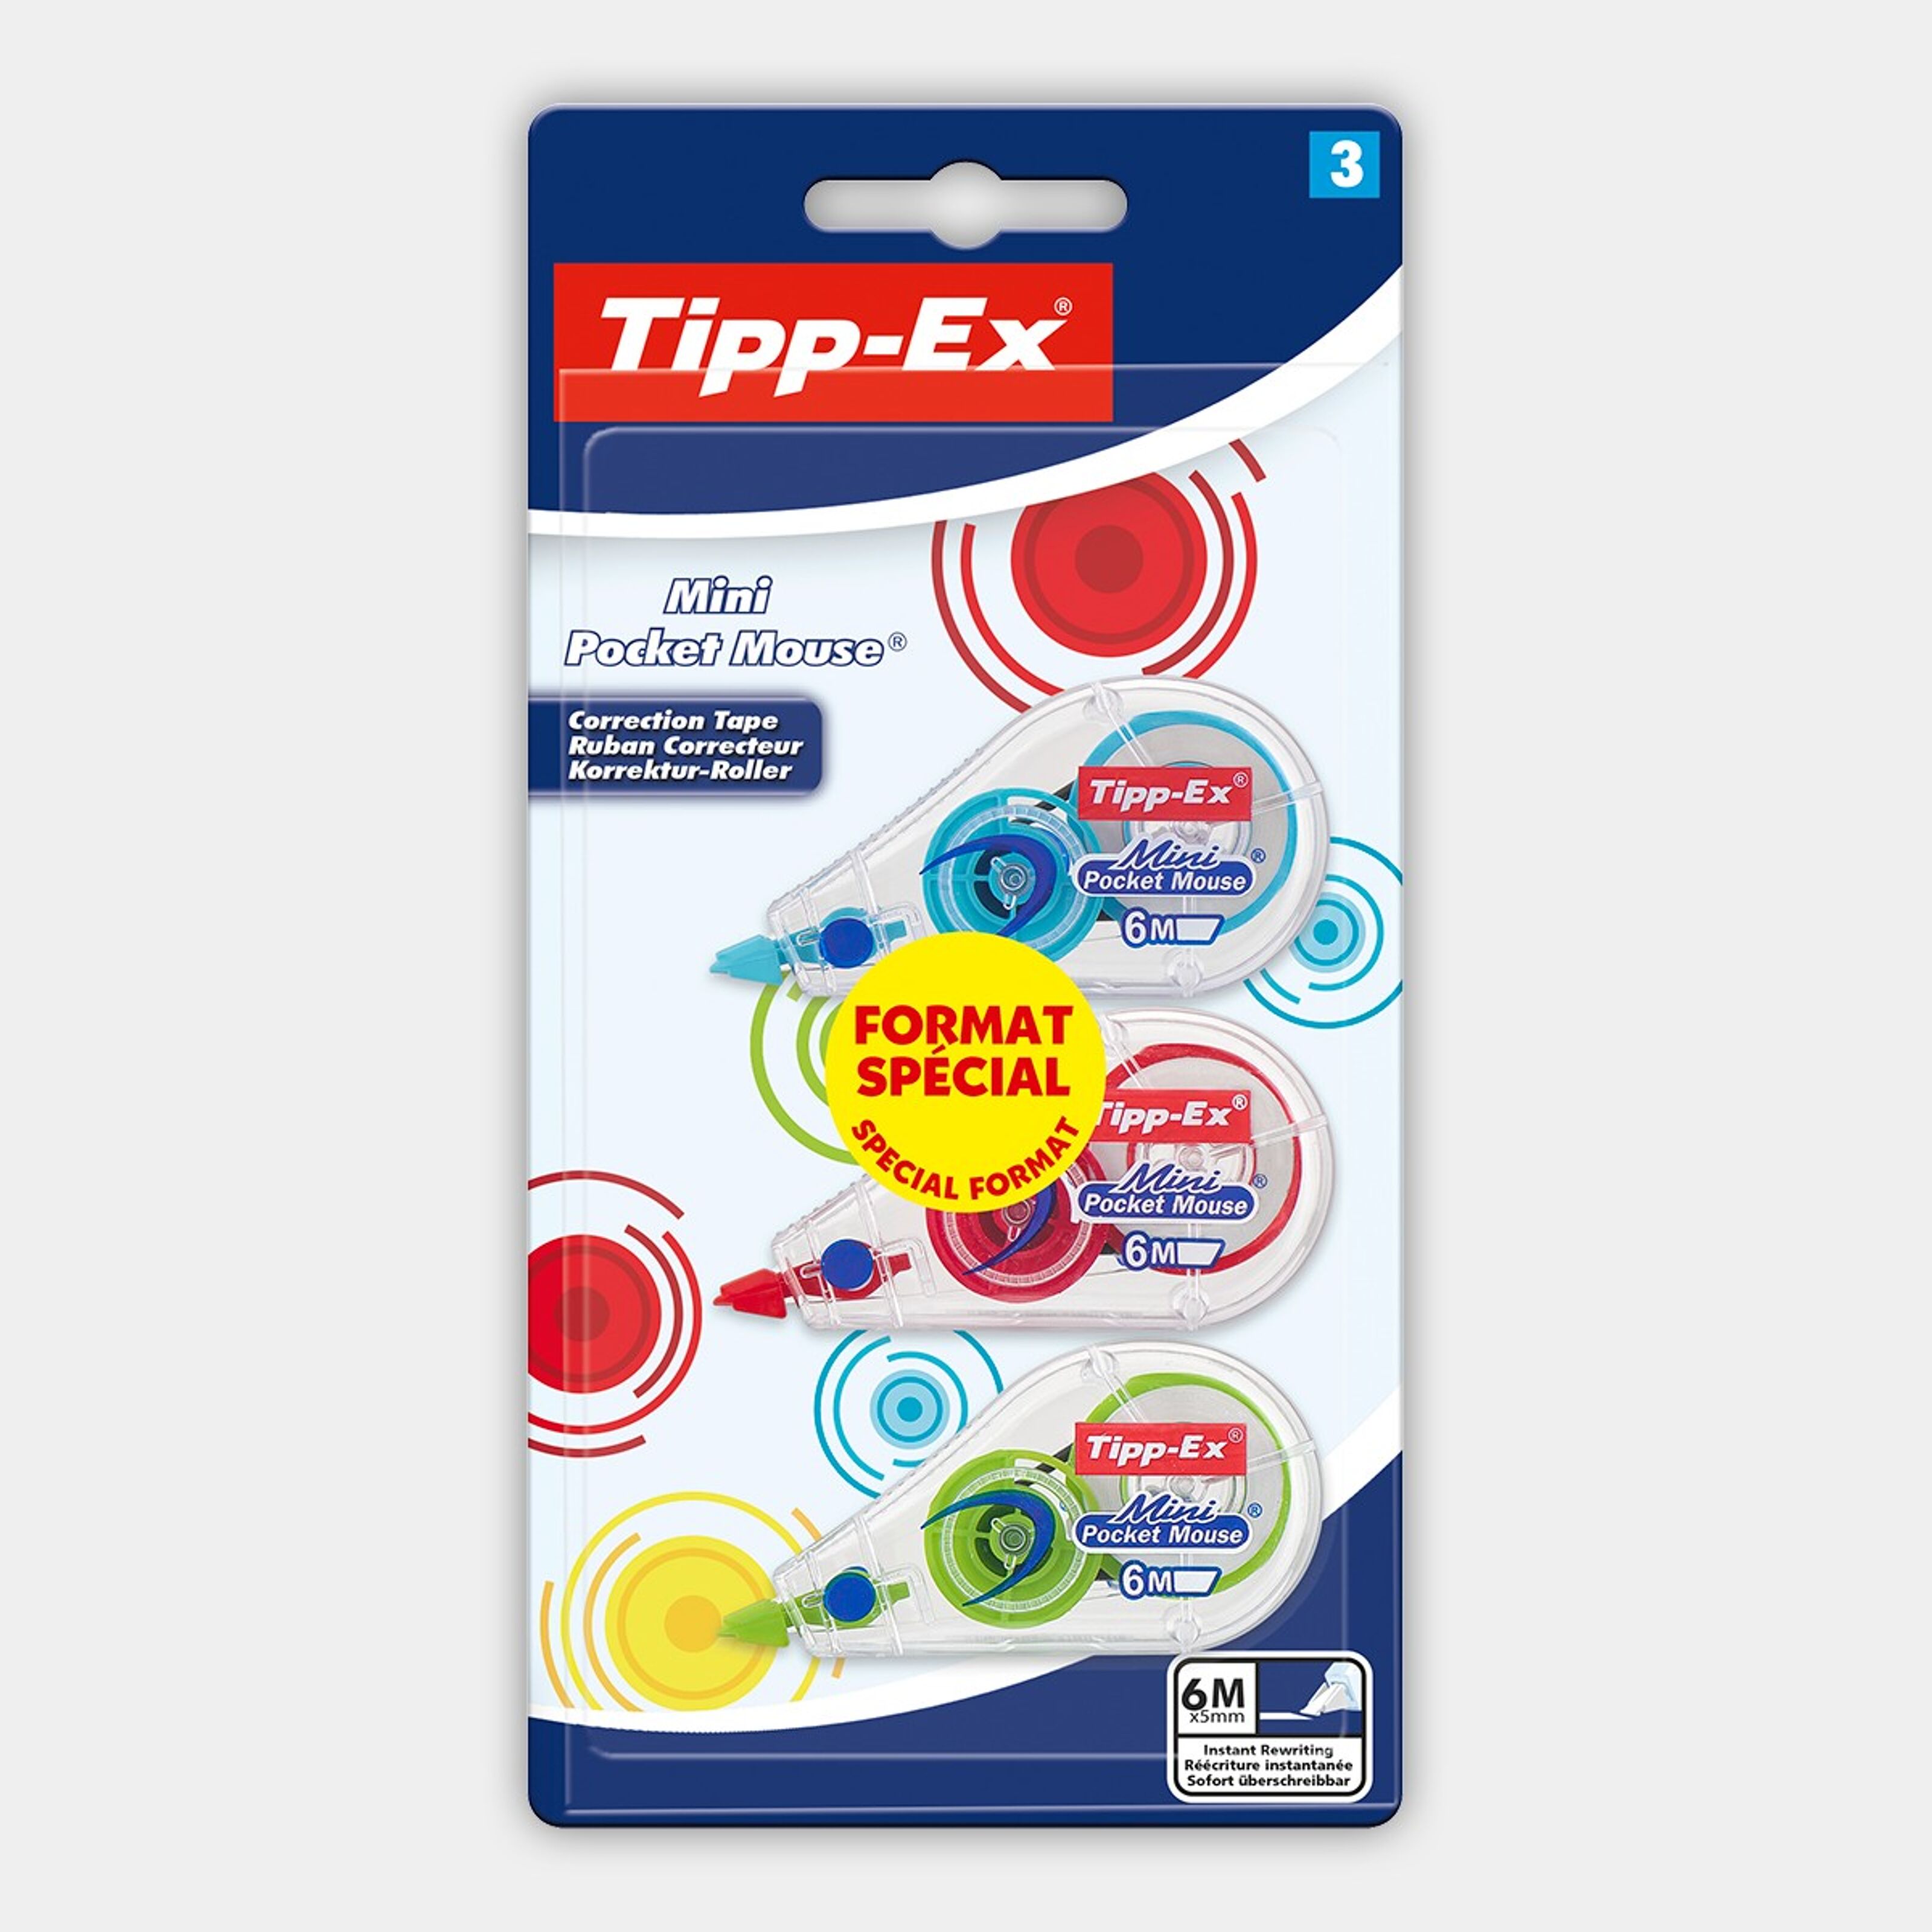 TIPP-EX Mini Pocket Mouse